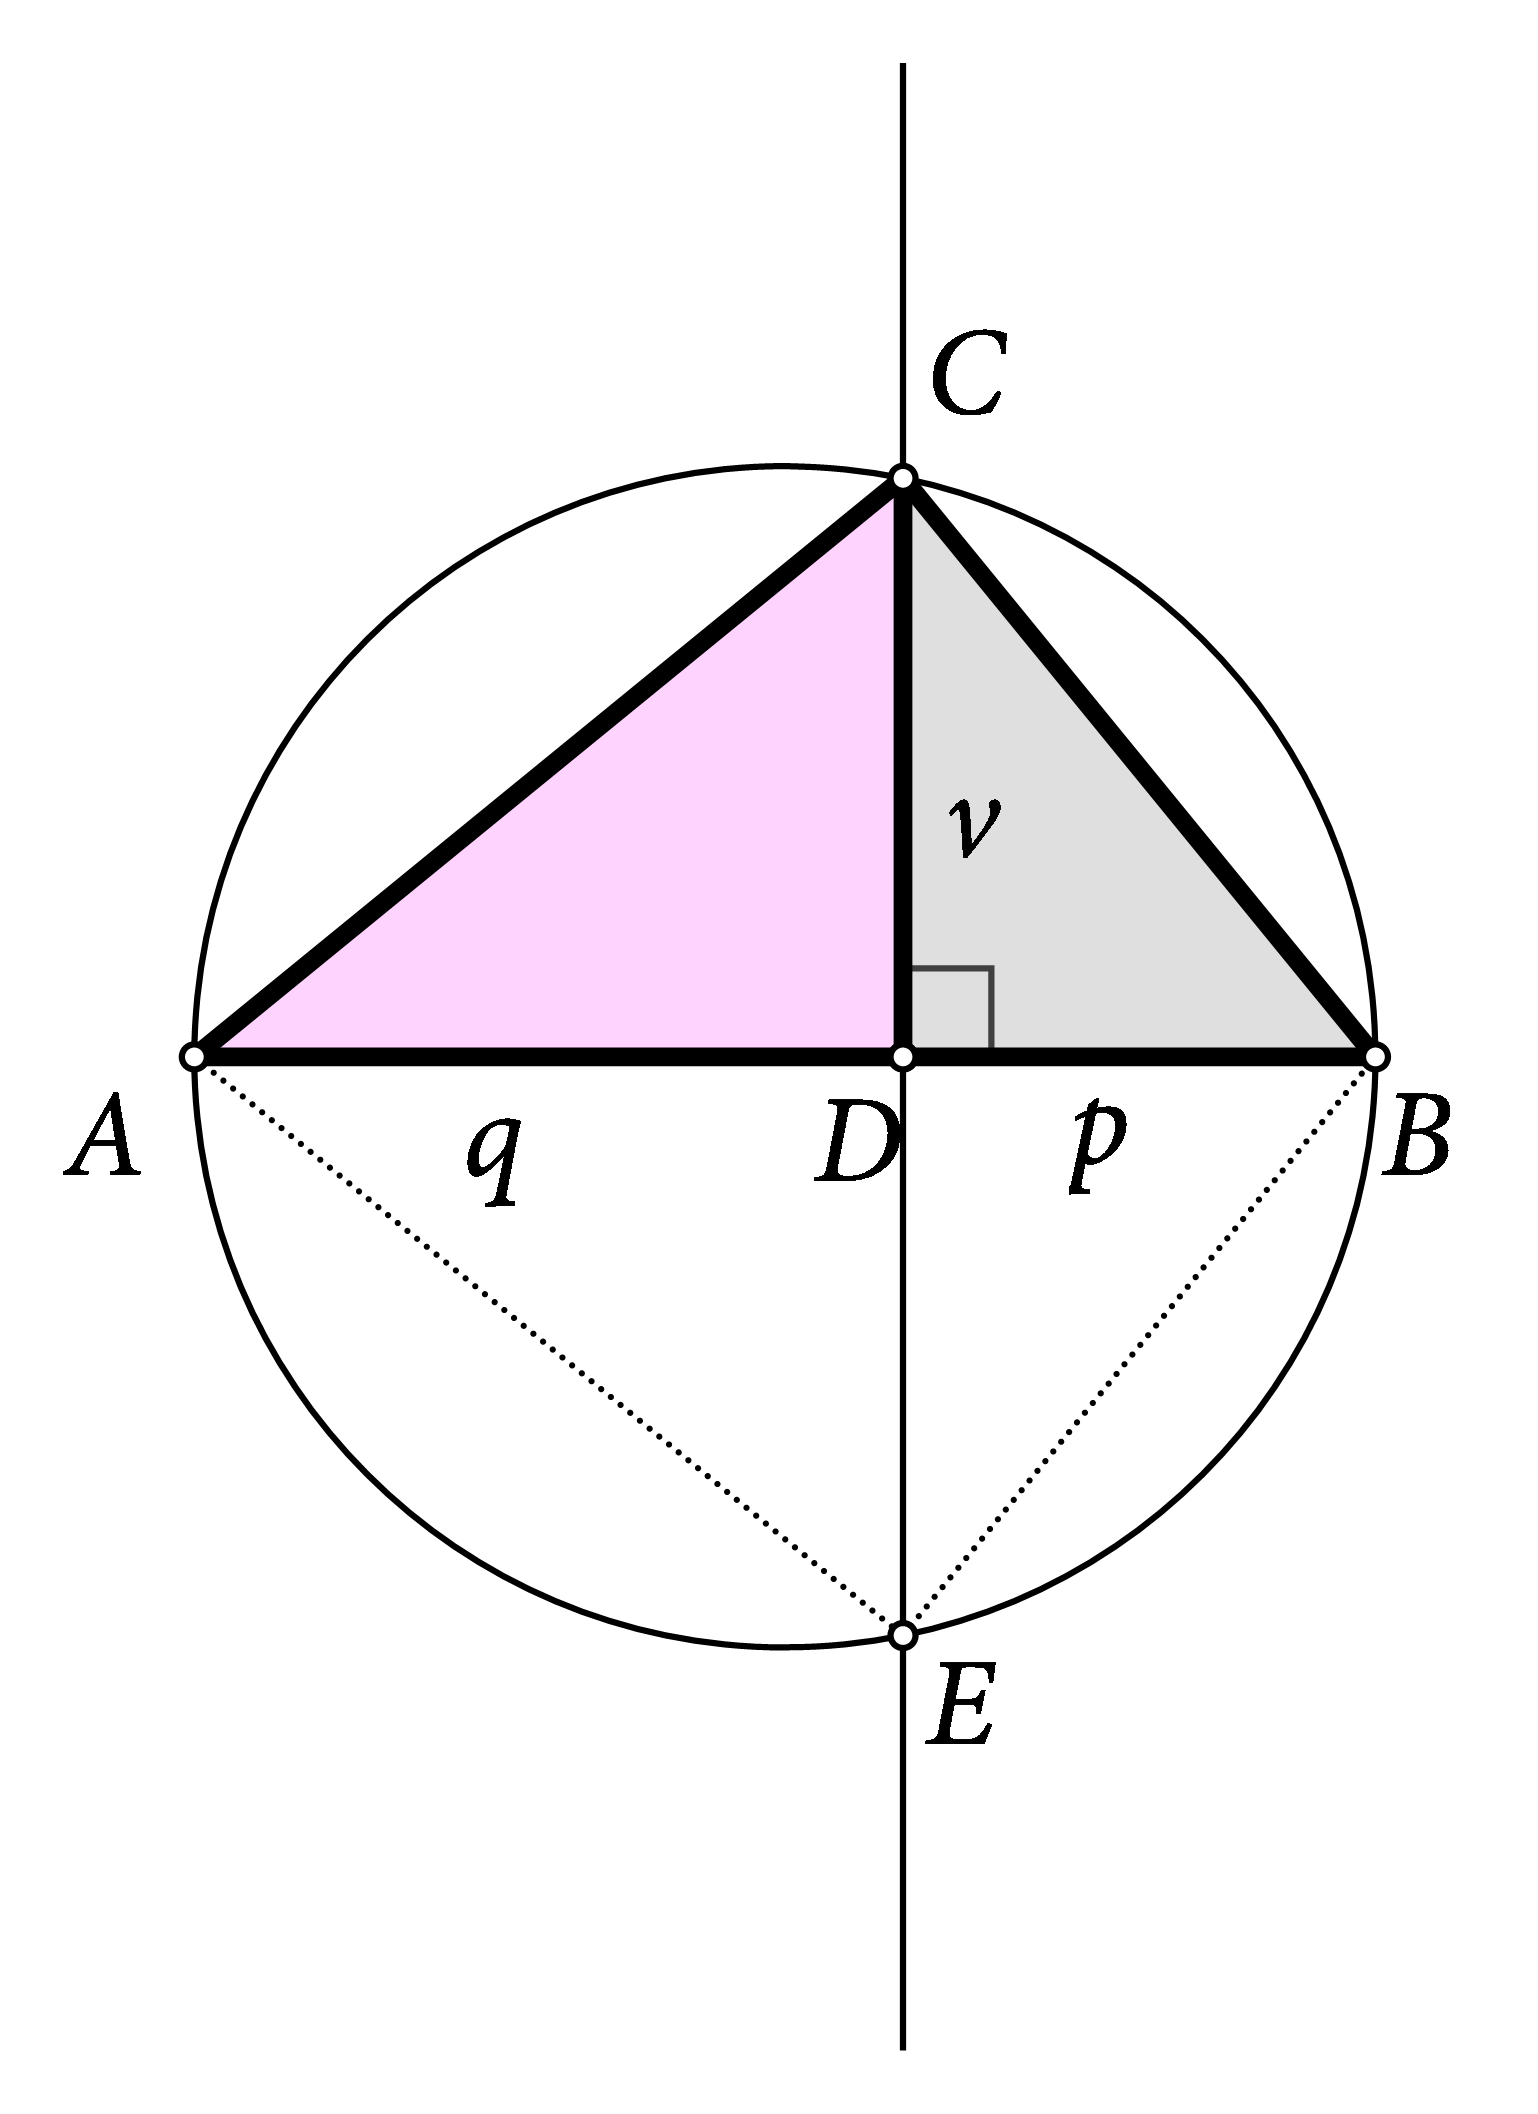 Na slici je istaknut pravokutni trokut ABC s hipotenuzom AB i visnom CD. Prikazana je primjena Euklidova poučka u konstrukcija korijena iz 6